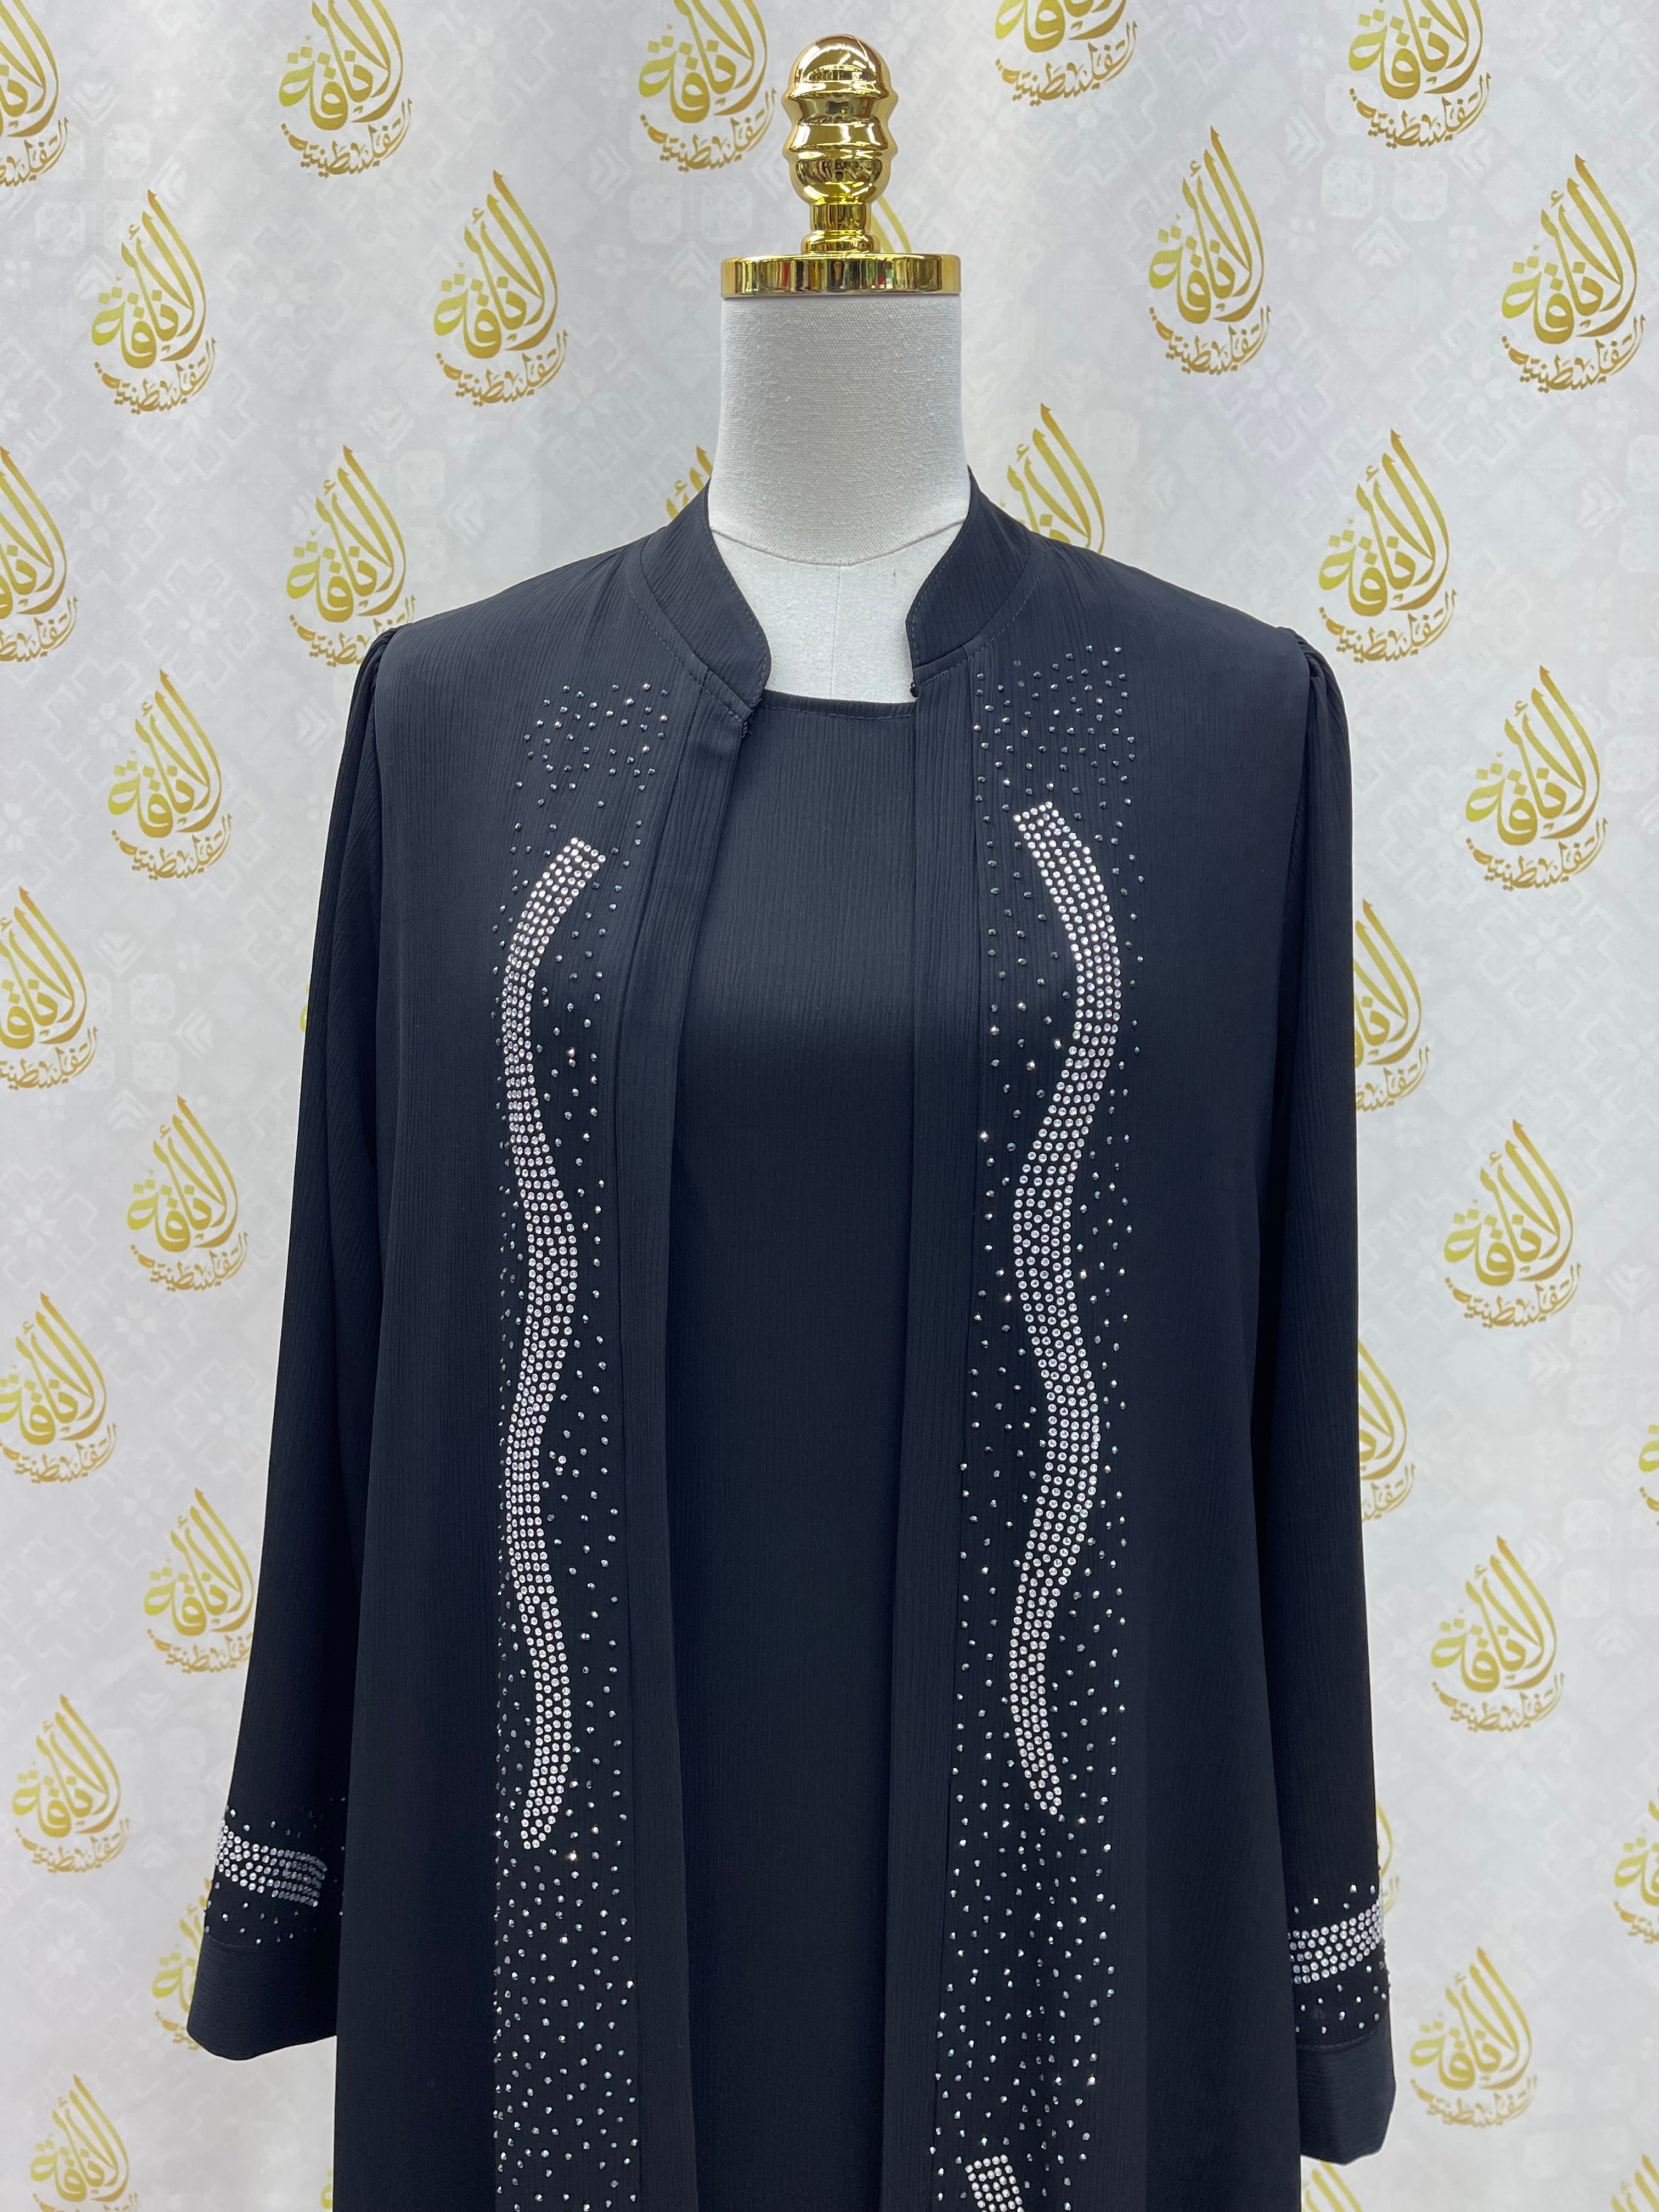 Elegant Abaya with strass